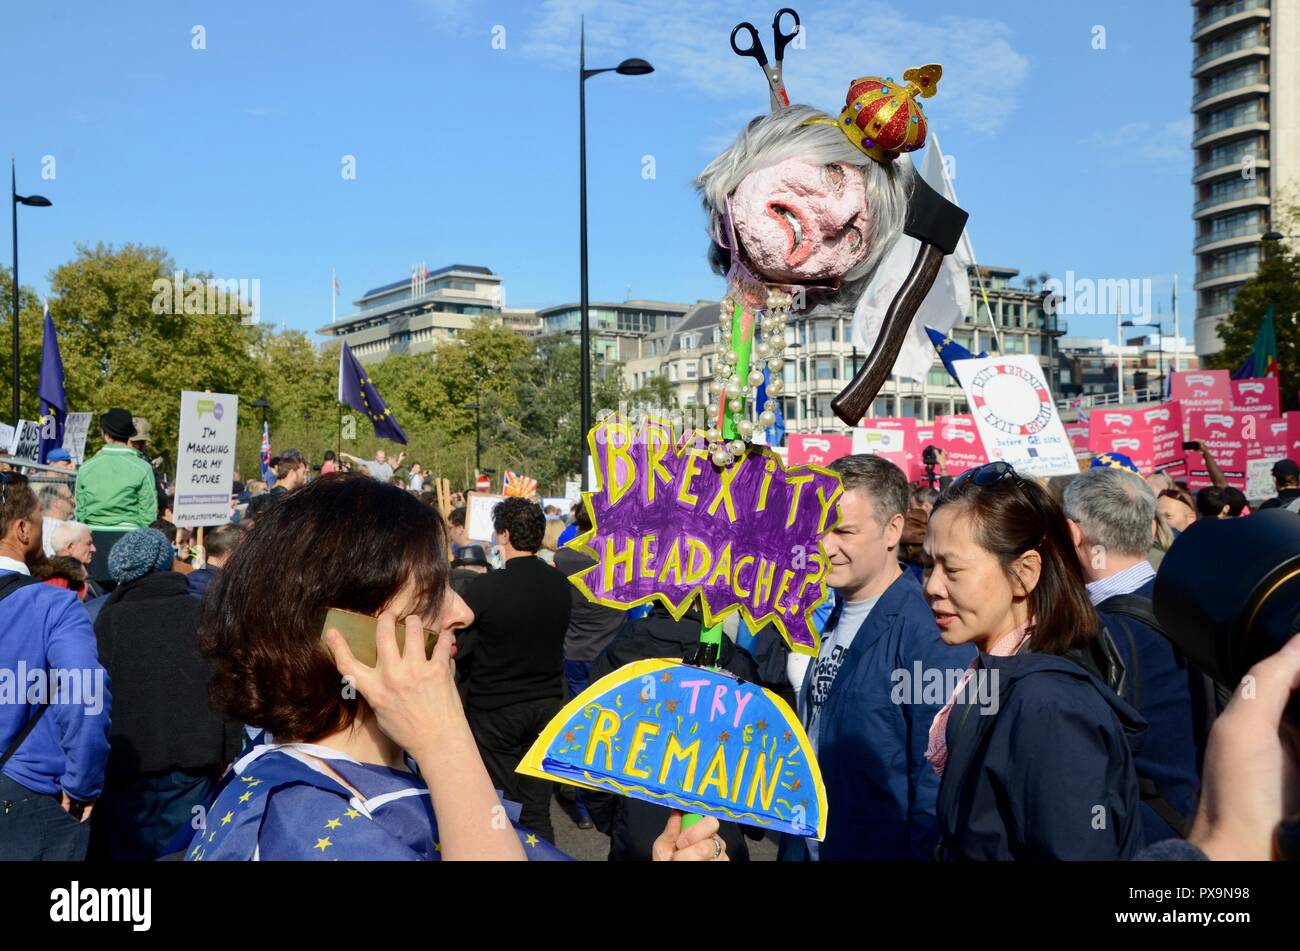 Peuples autochtones anti brexit mars manifestation à Londres 20 oct 2018 UK Banque D'Images